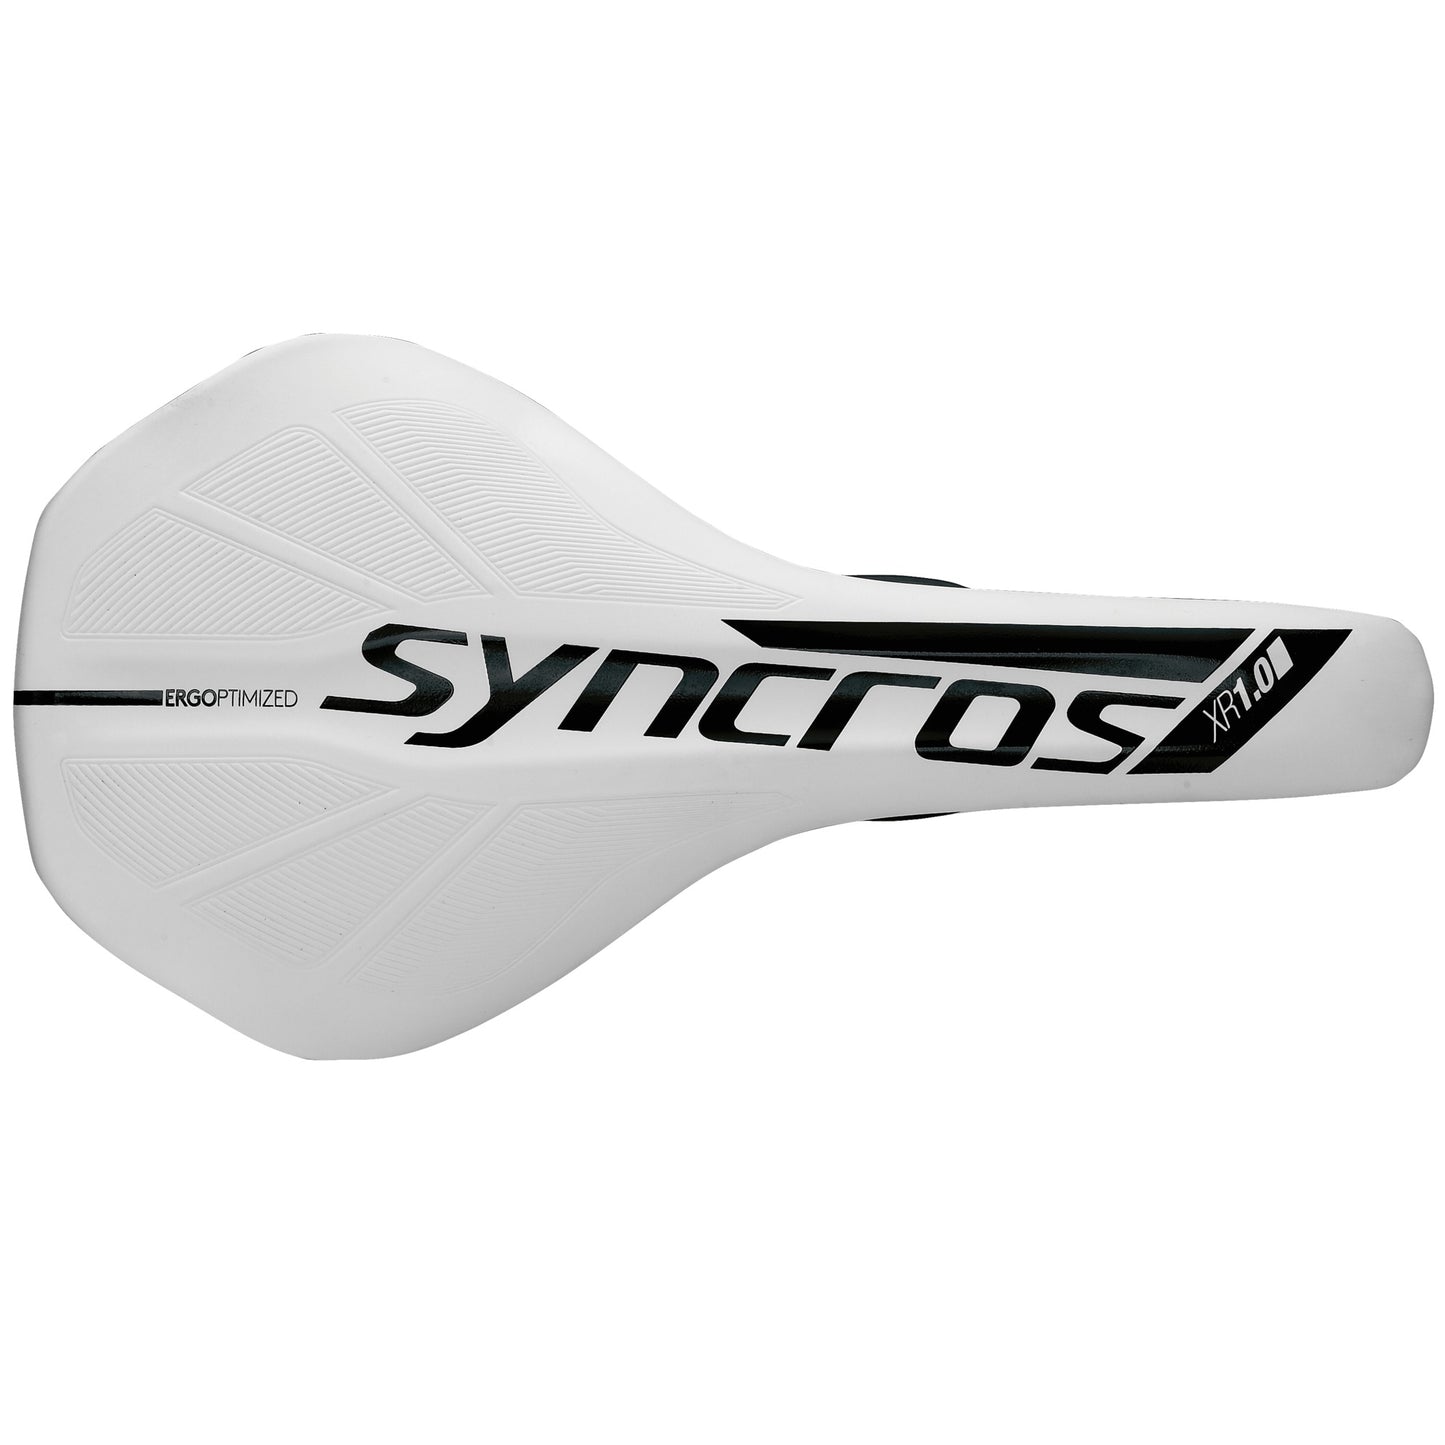 Syncros Saddle XR1.0 Carbon White narrow